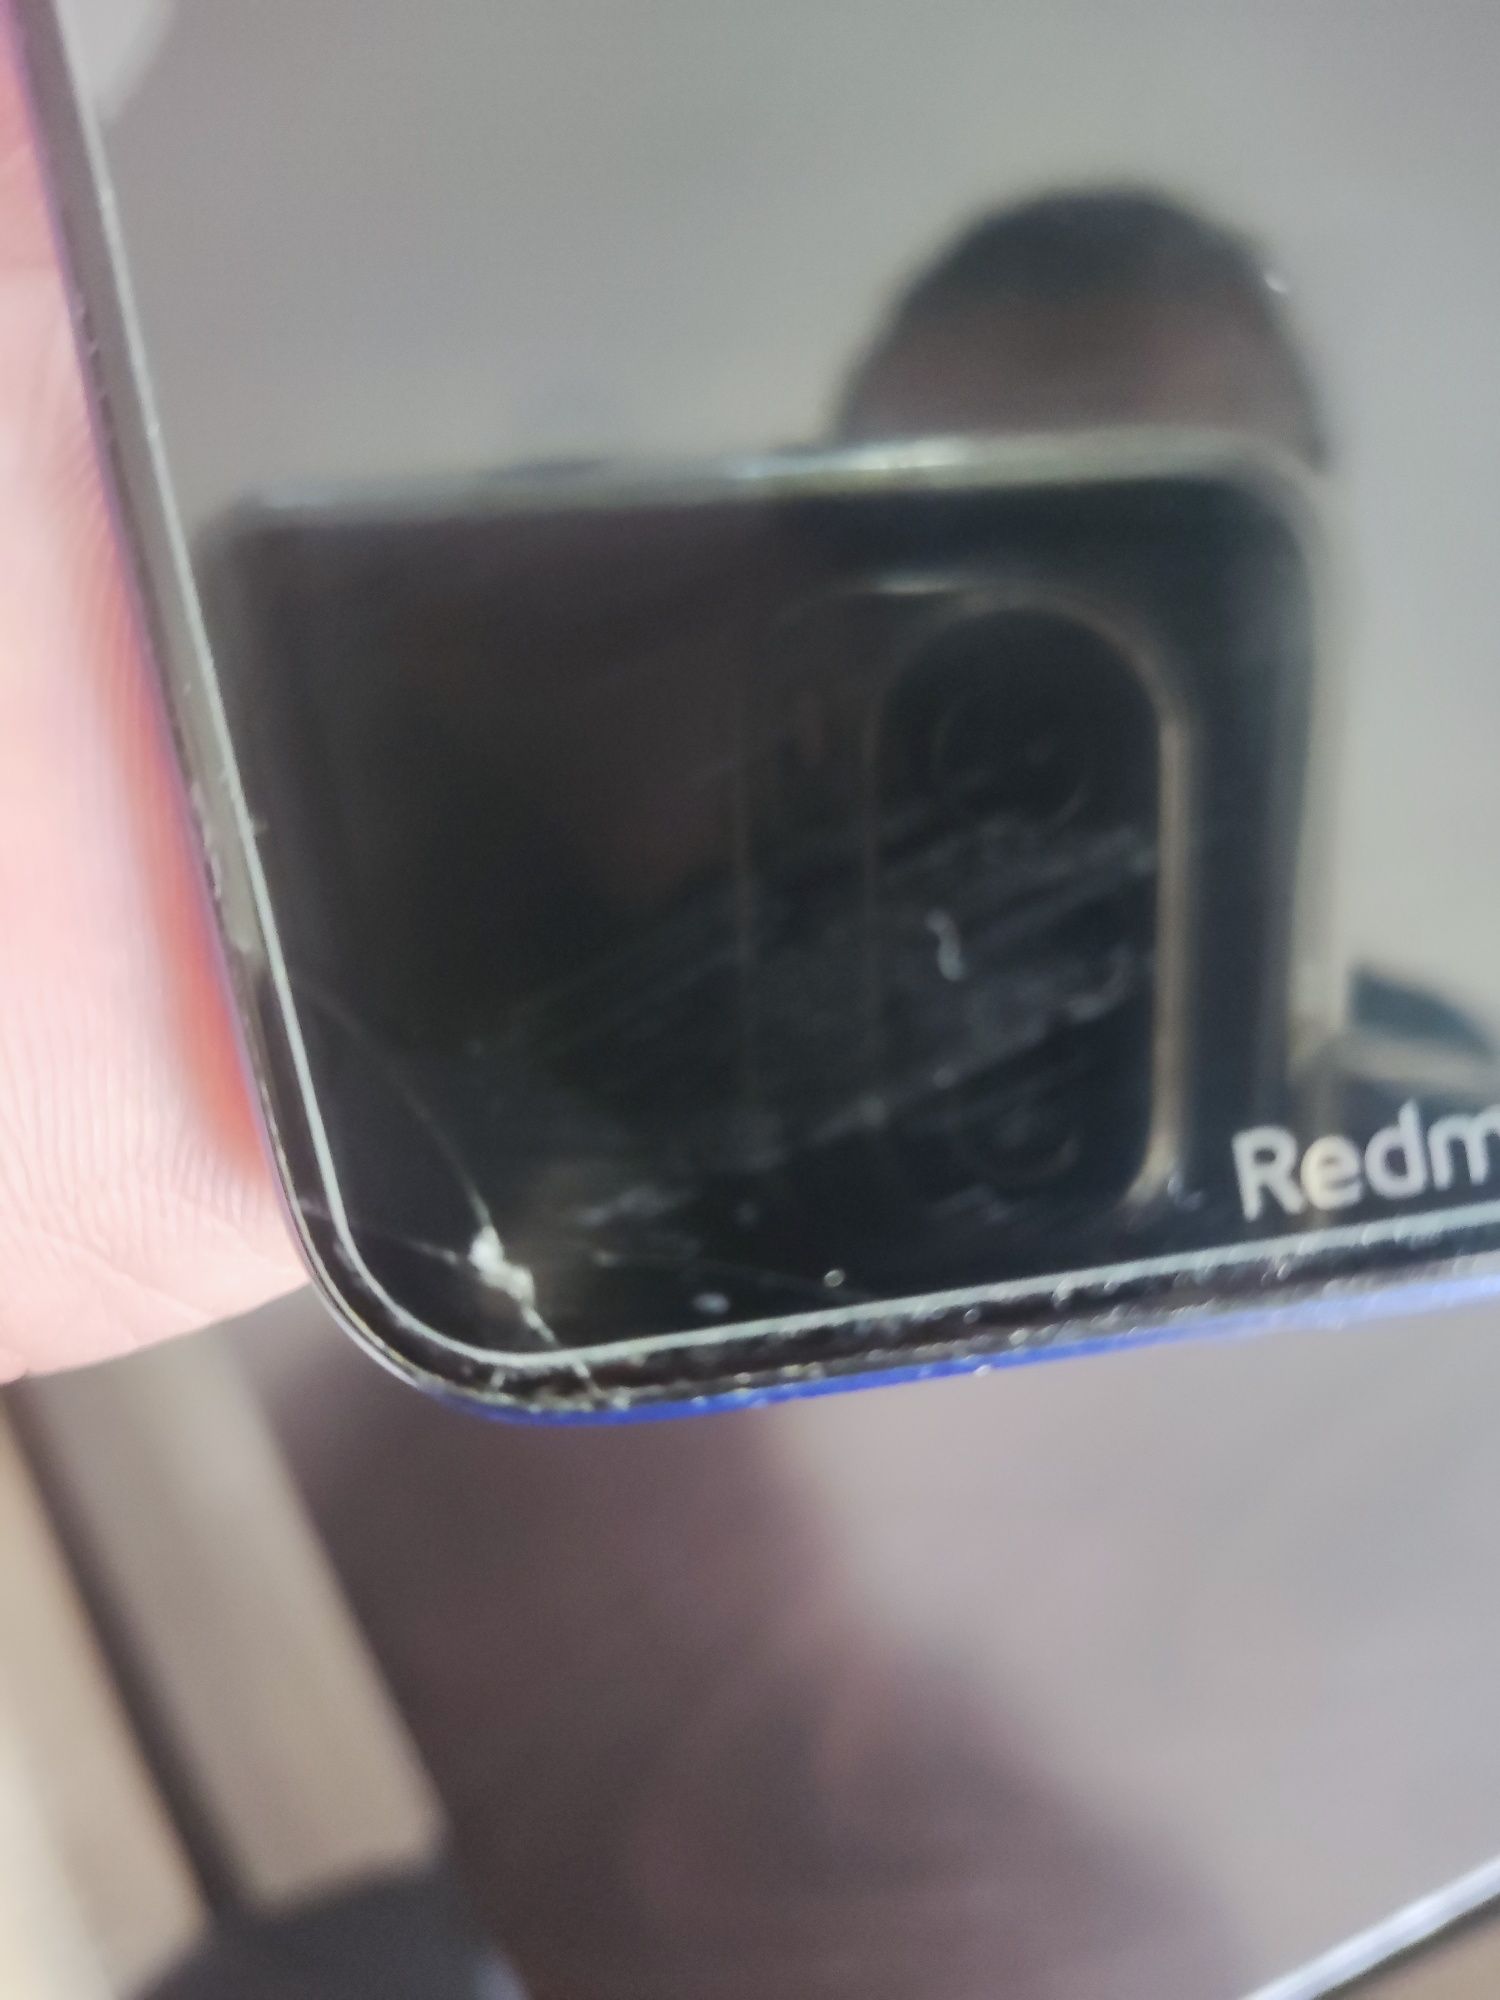 Xiaomi Redmi note 8T